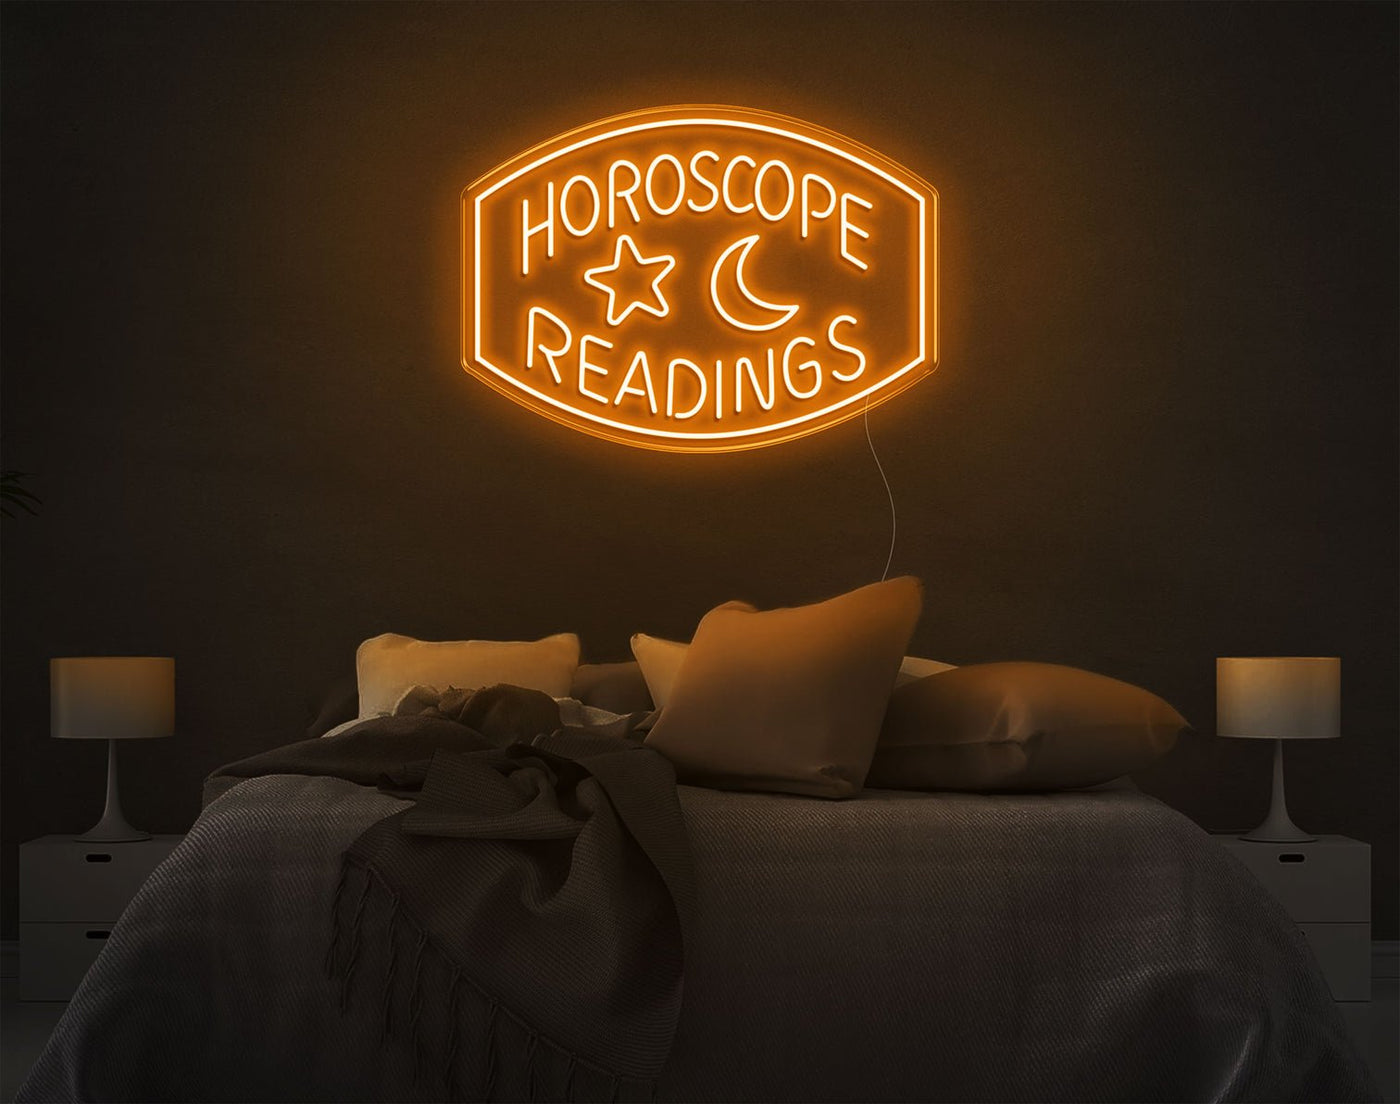 Horoscope Readings LED Neon Sign - 20inch x 28inchOrange